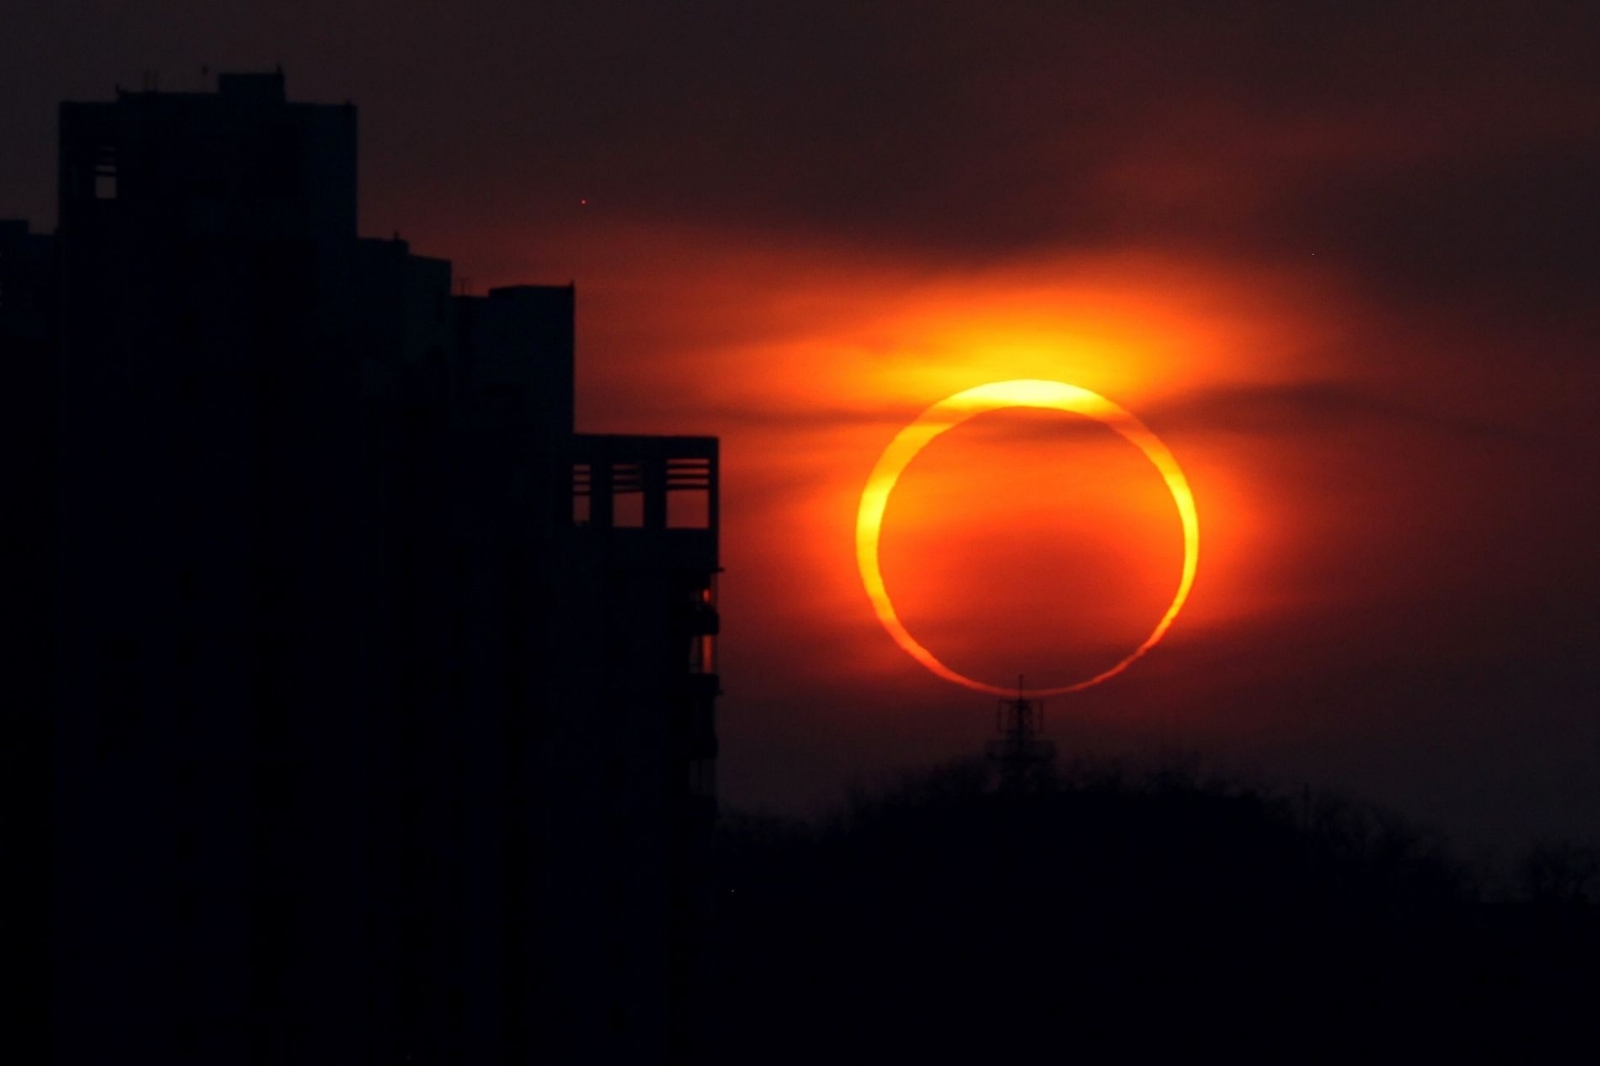 Eclipse solar 2023: ¿Cómo verlo de forma segura?